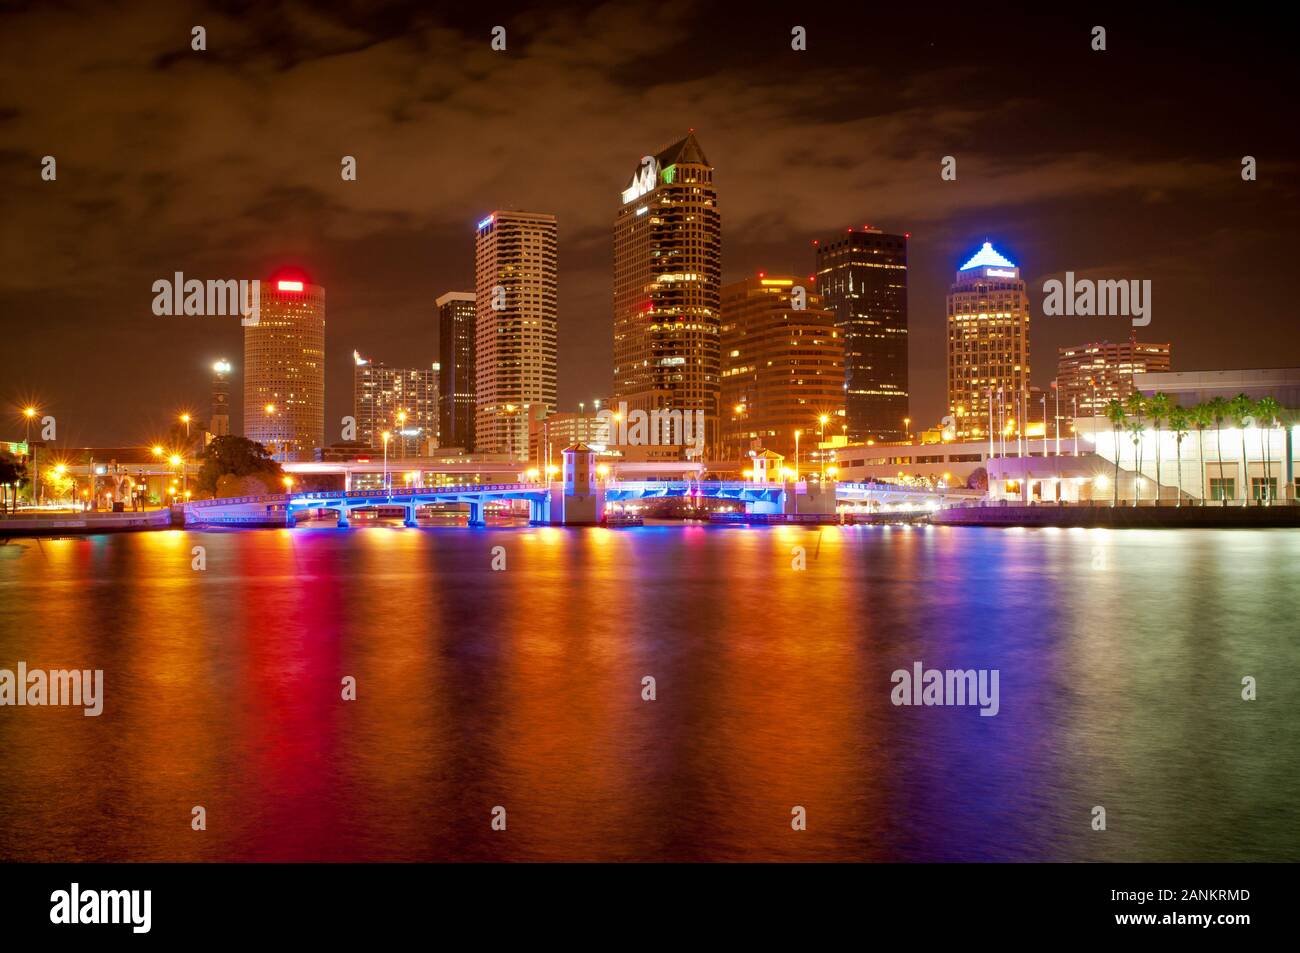 Skyline del centro de Tampa al otro lado del río Por La Noche Foto de stock